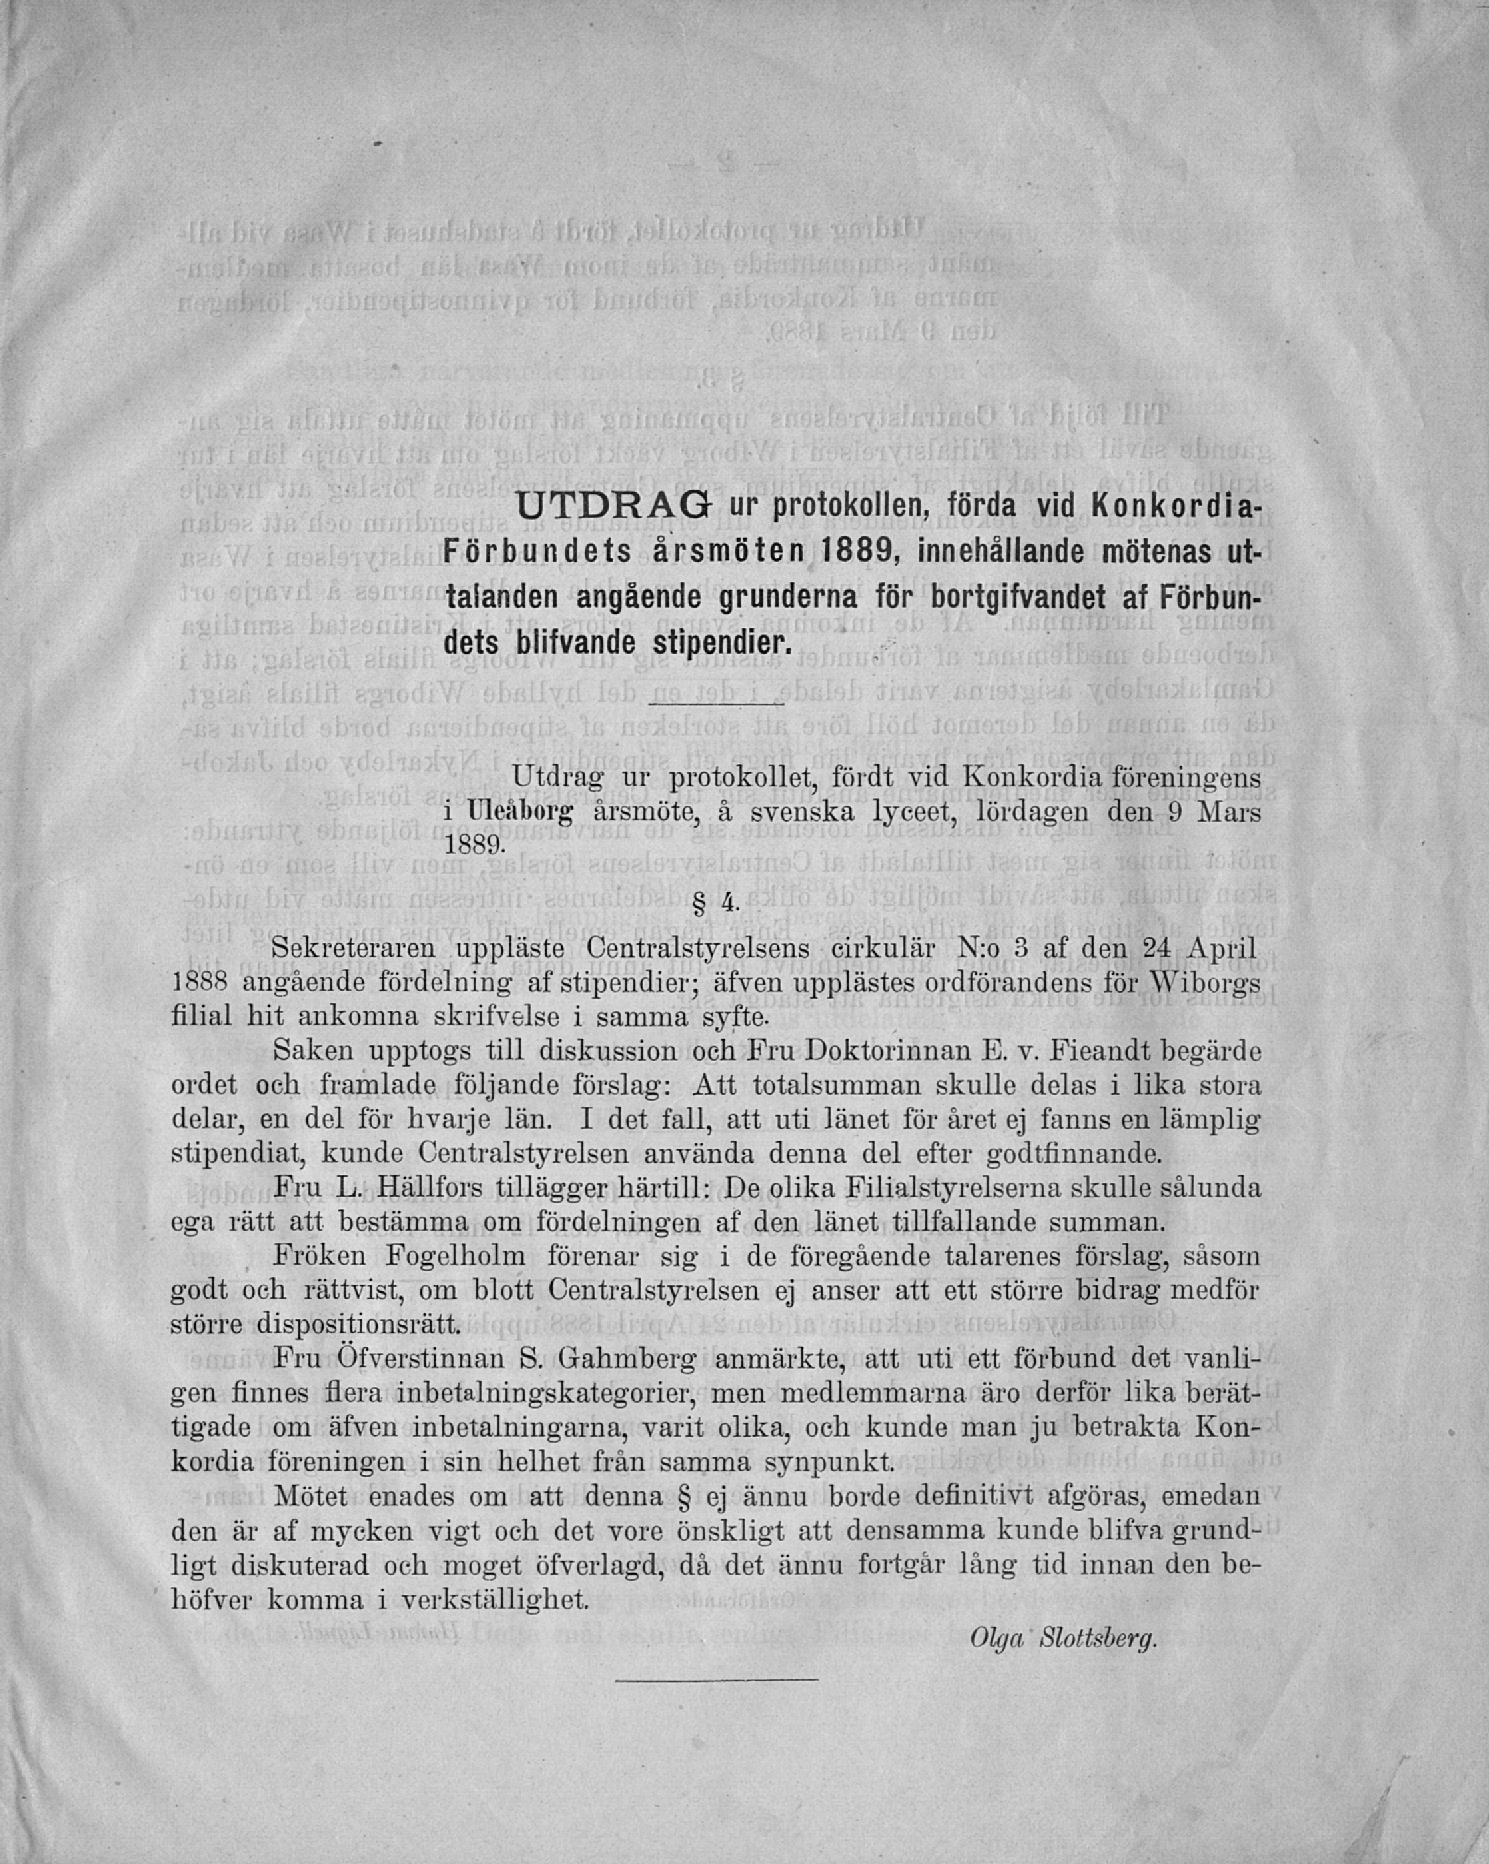 UTDRAG ur protokollen, förda vid Konkordia- Förbundets årsmöten 1889. talanden angående grunderna för bortgifvandet af Förbundets blifvande stipendier.